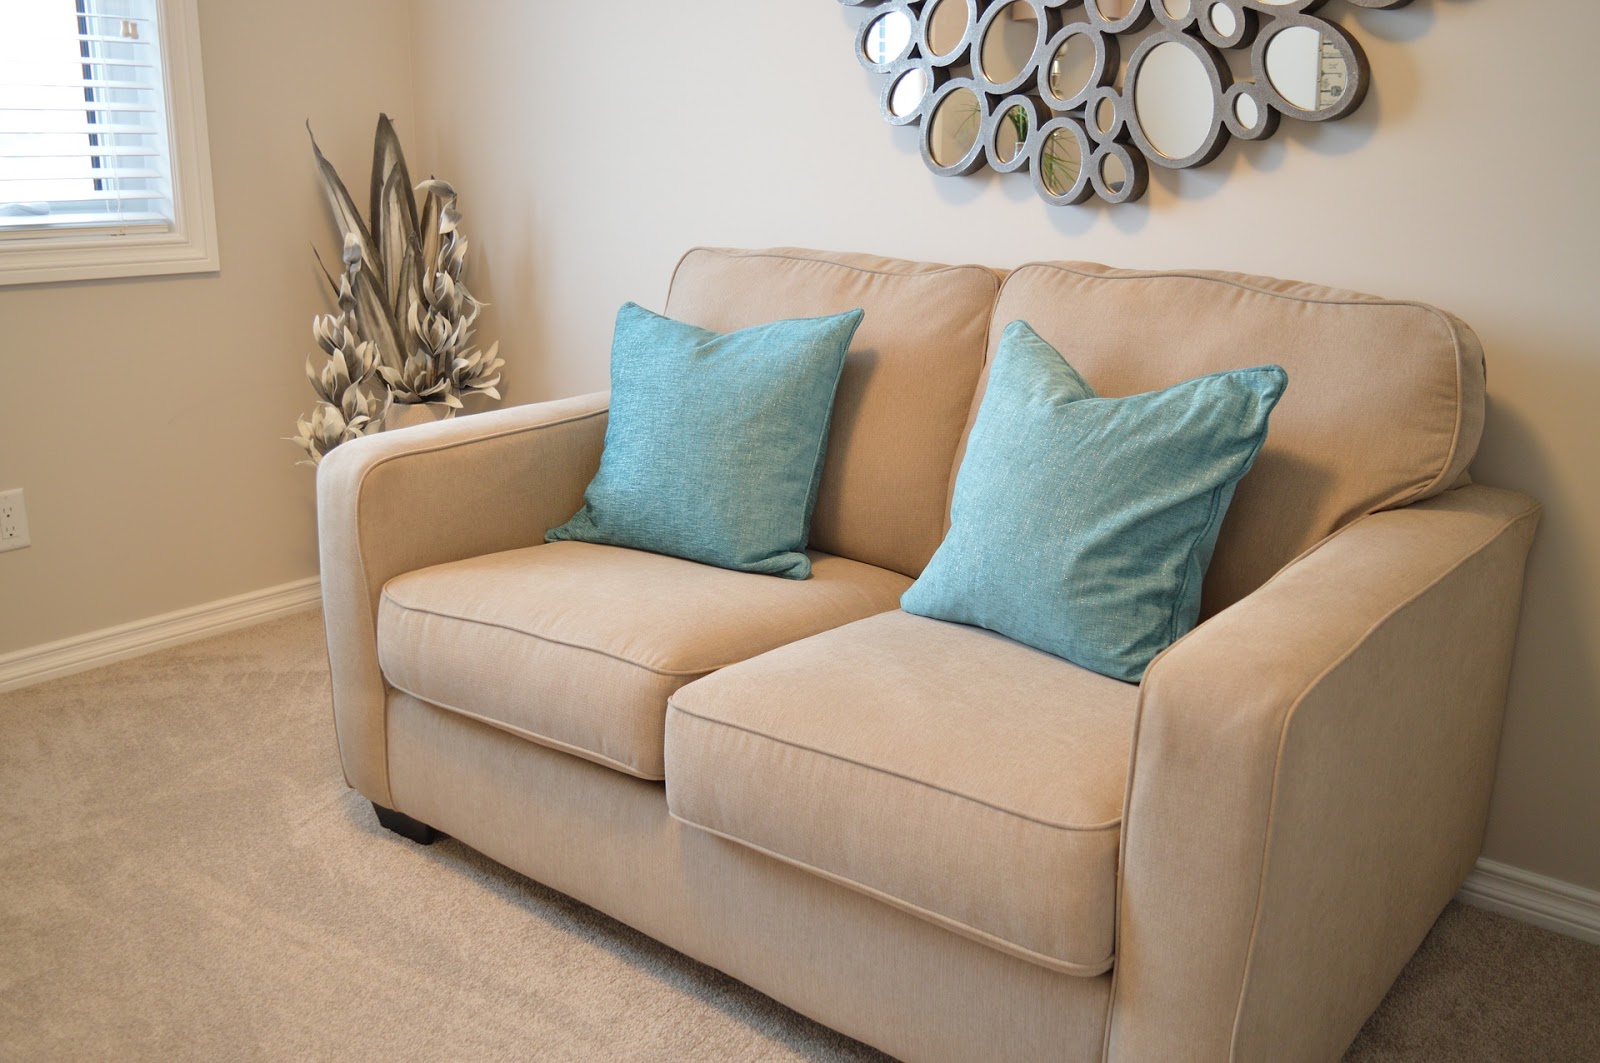 Foto de um sofá bege com almofadas azuis em uma sala. Vemos um quadro, planta e janela ao lado. Imagem ilustrativa para texto mistura para limpar sofá.